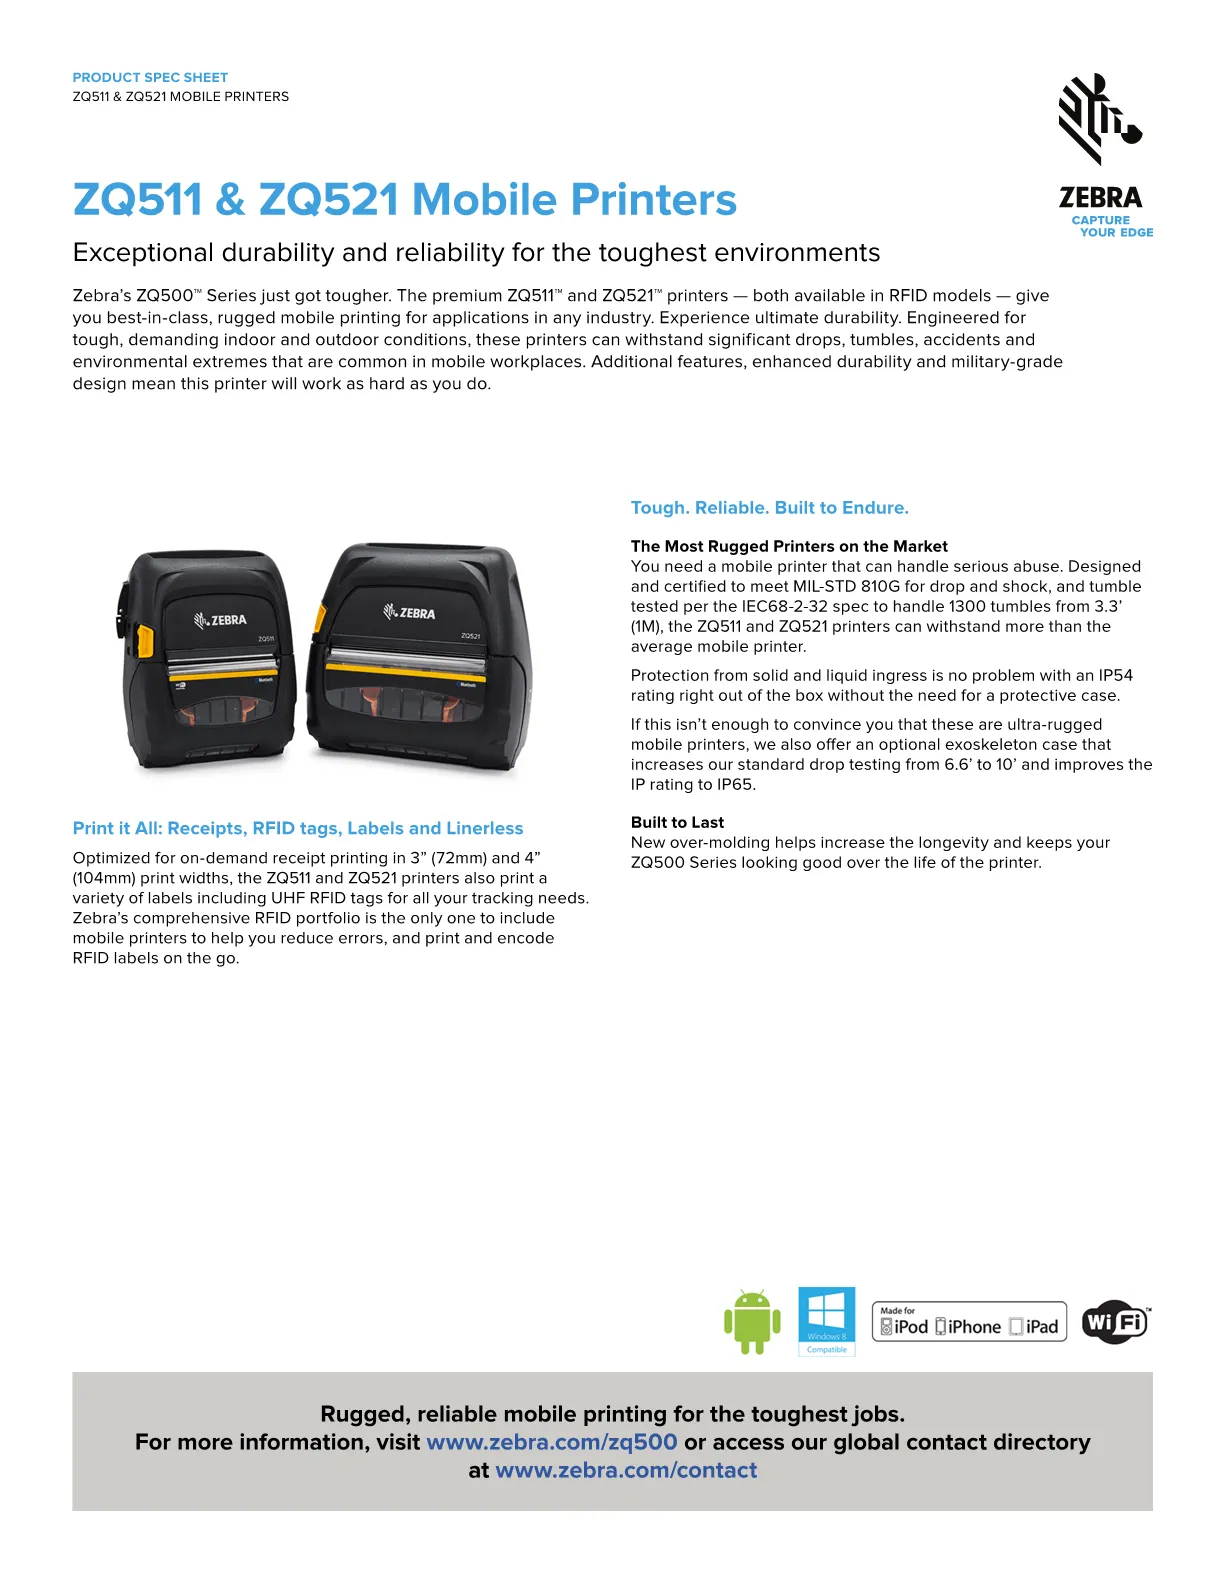 Zebra Zq521 Mobile Label Printer 4 Inch Zq52 Baw000a 00 4505